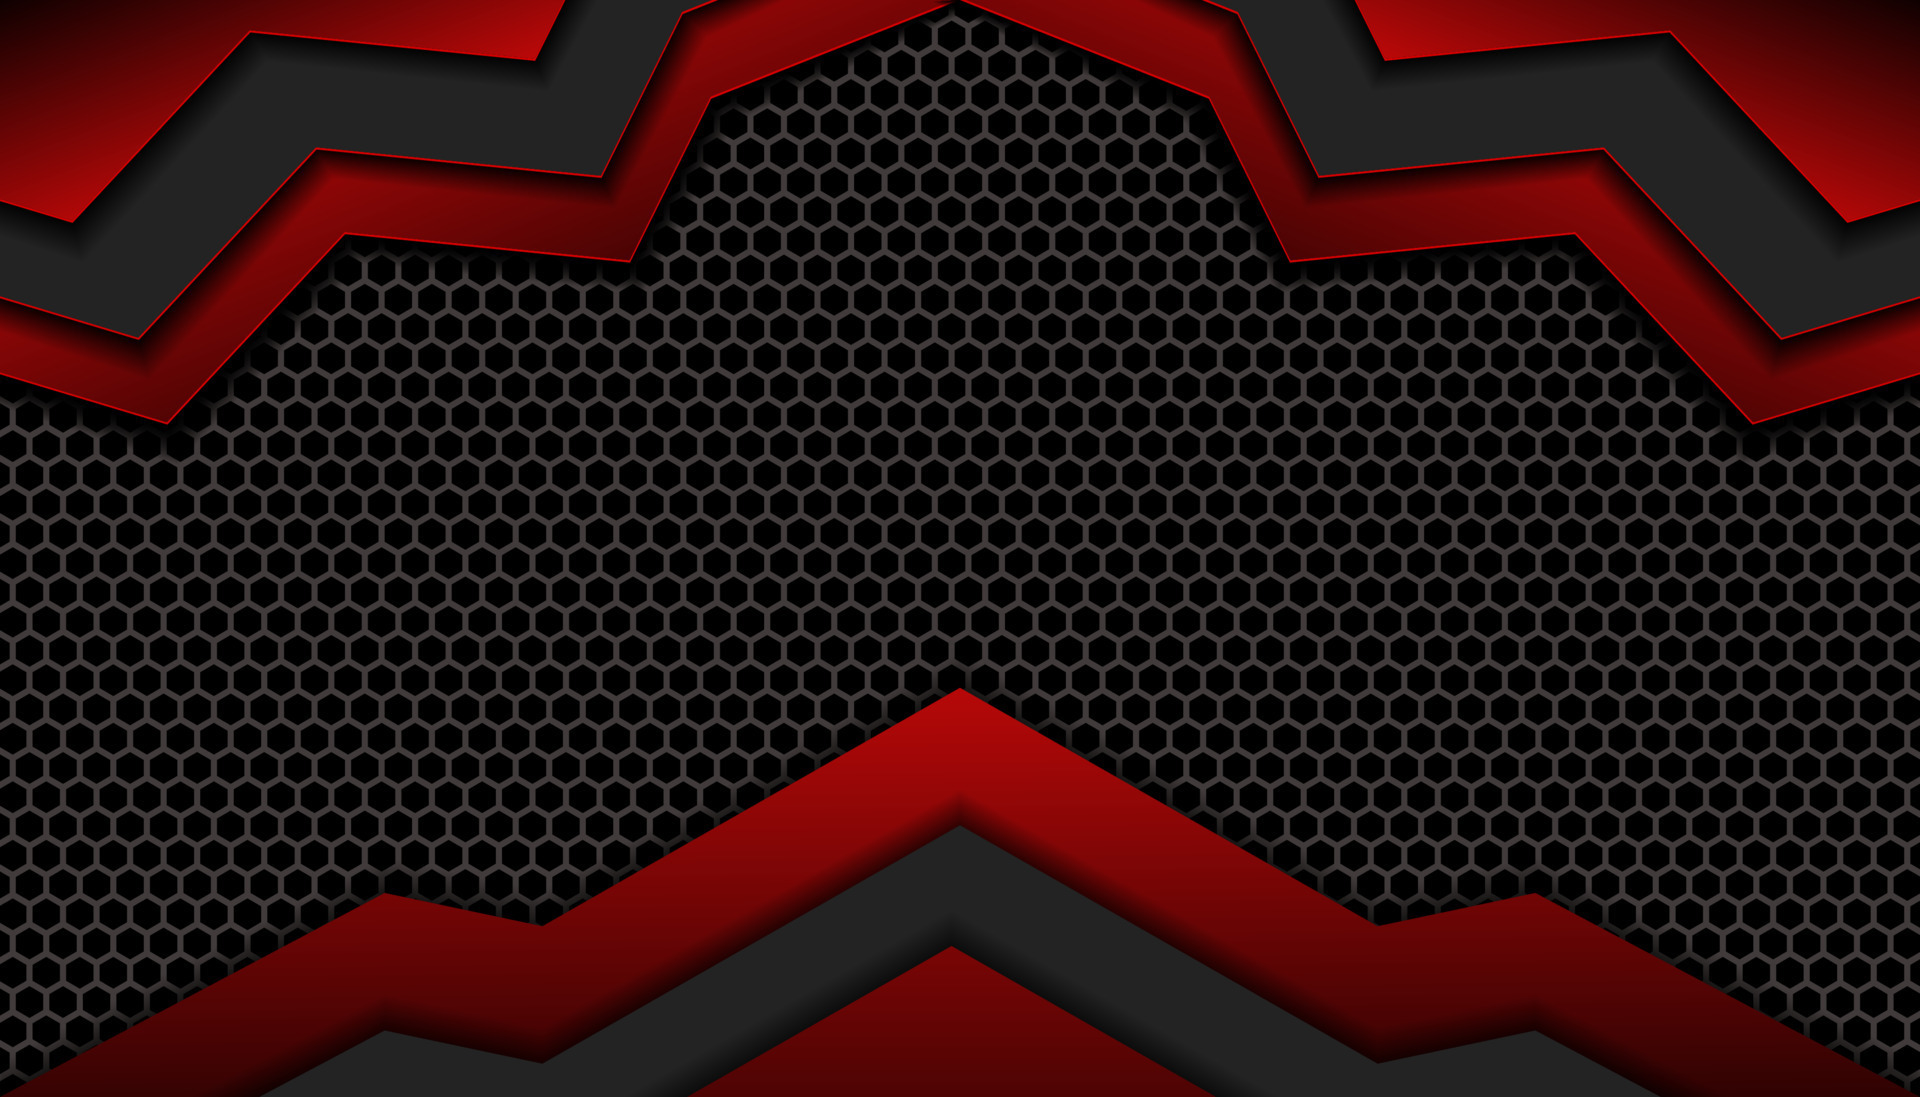 Hình nền chơi game tương lai đen đỏ trừu tượng với hình lục giác tinh tế này sẽ khiến bạn phải trầm trồ ngay từ cái nhìn đầu tiên. Thiết kế táo bạo và ấn tượng cùng sự phối hợp độc đáo giữa đen và đỏ sẽ làm nổi bật cho màn hình của bạn hơn bao giờ hết.